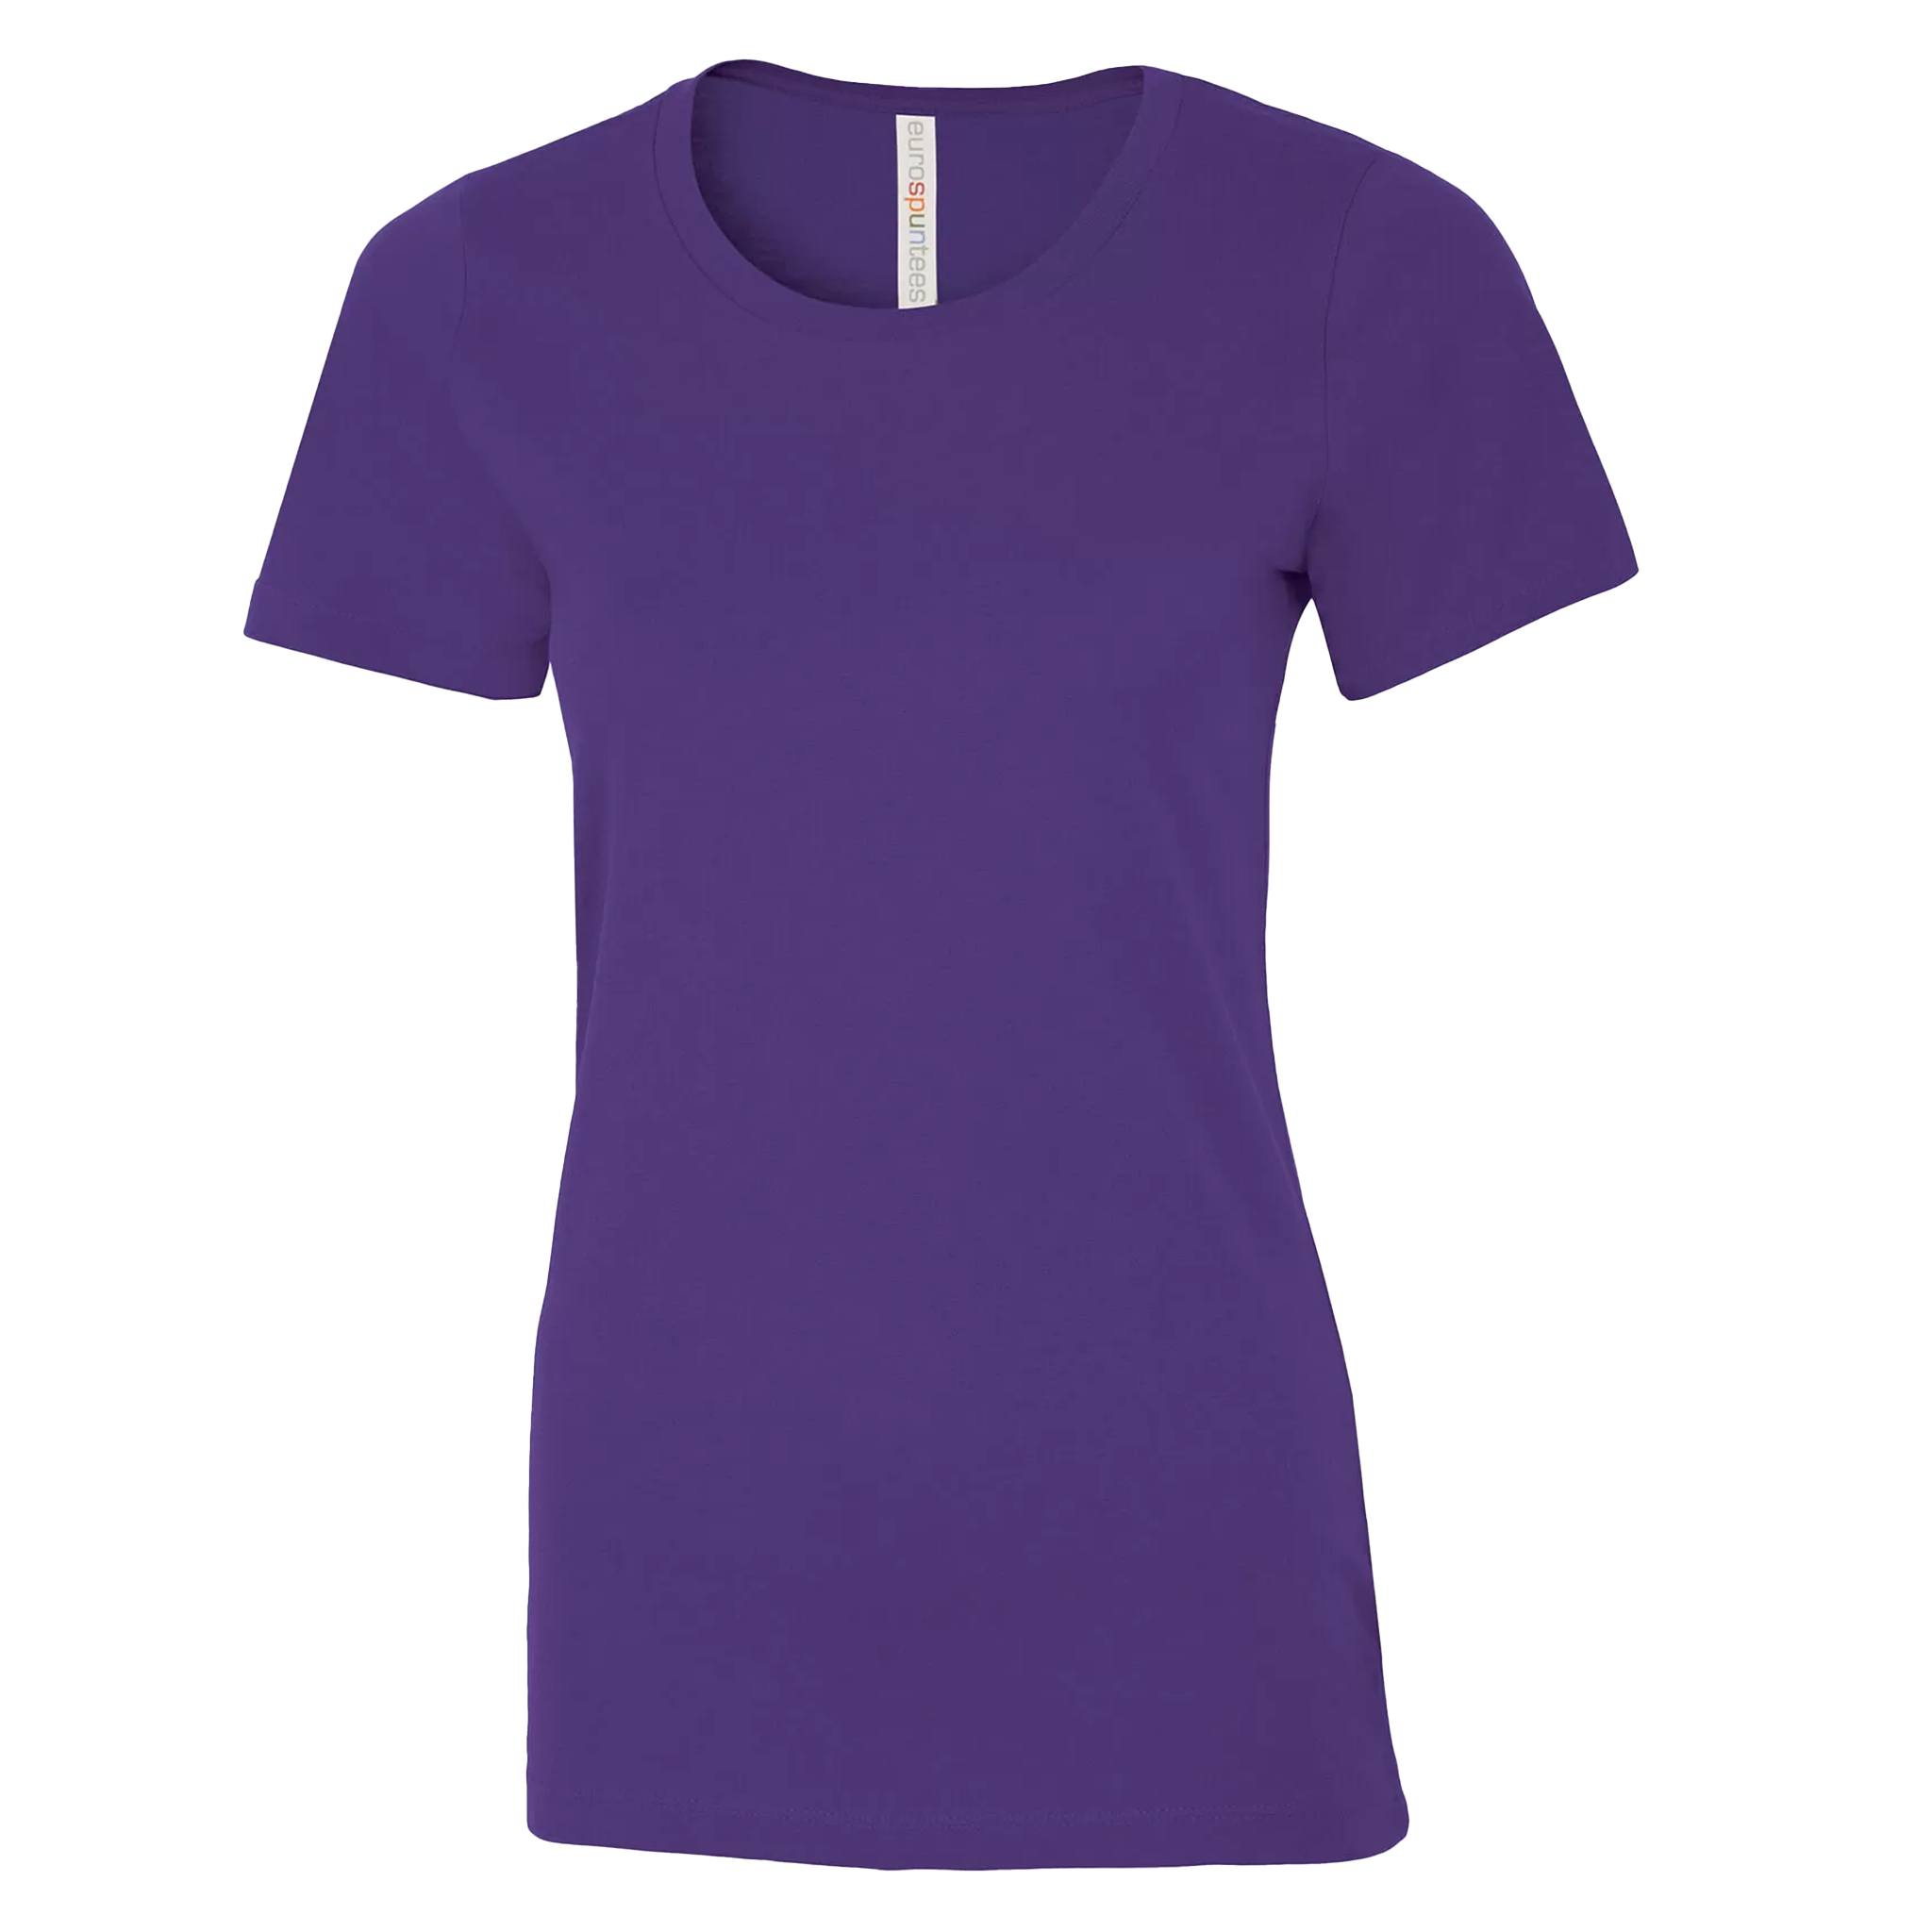 ATC Eurospun Ring Spun T-Shirt - Women's Sizing XS-4XL - Purple